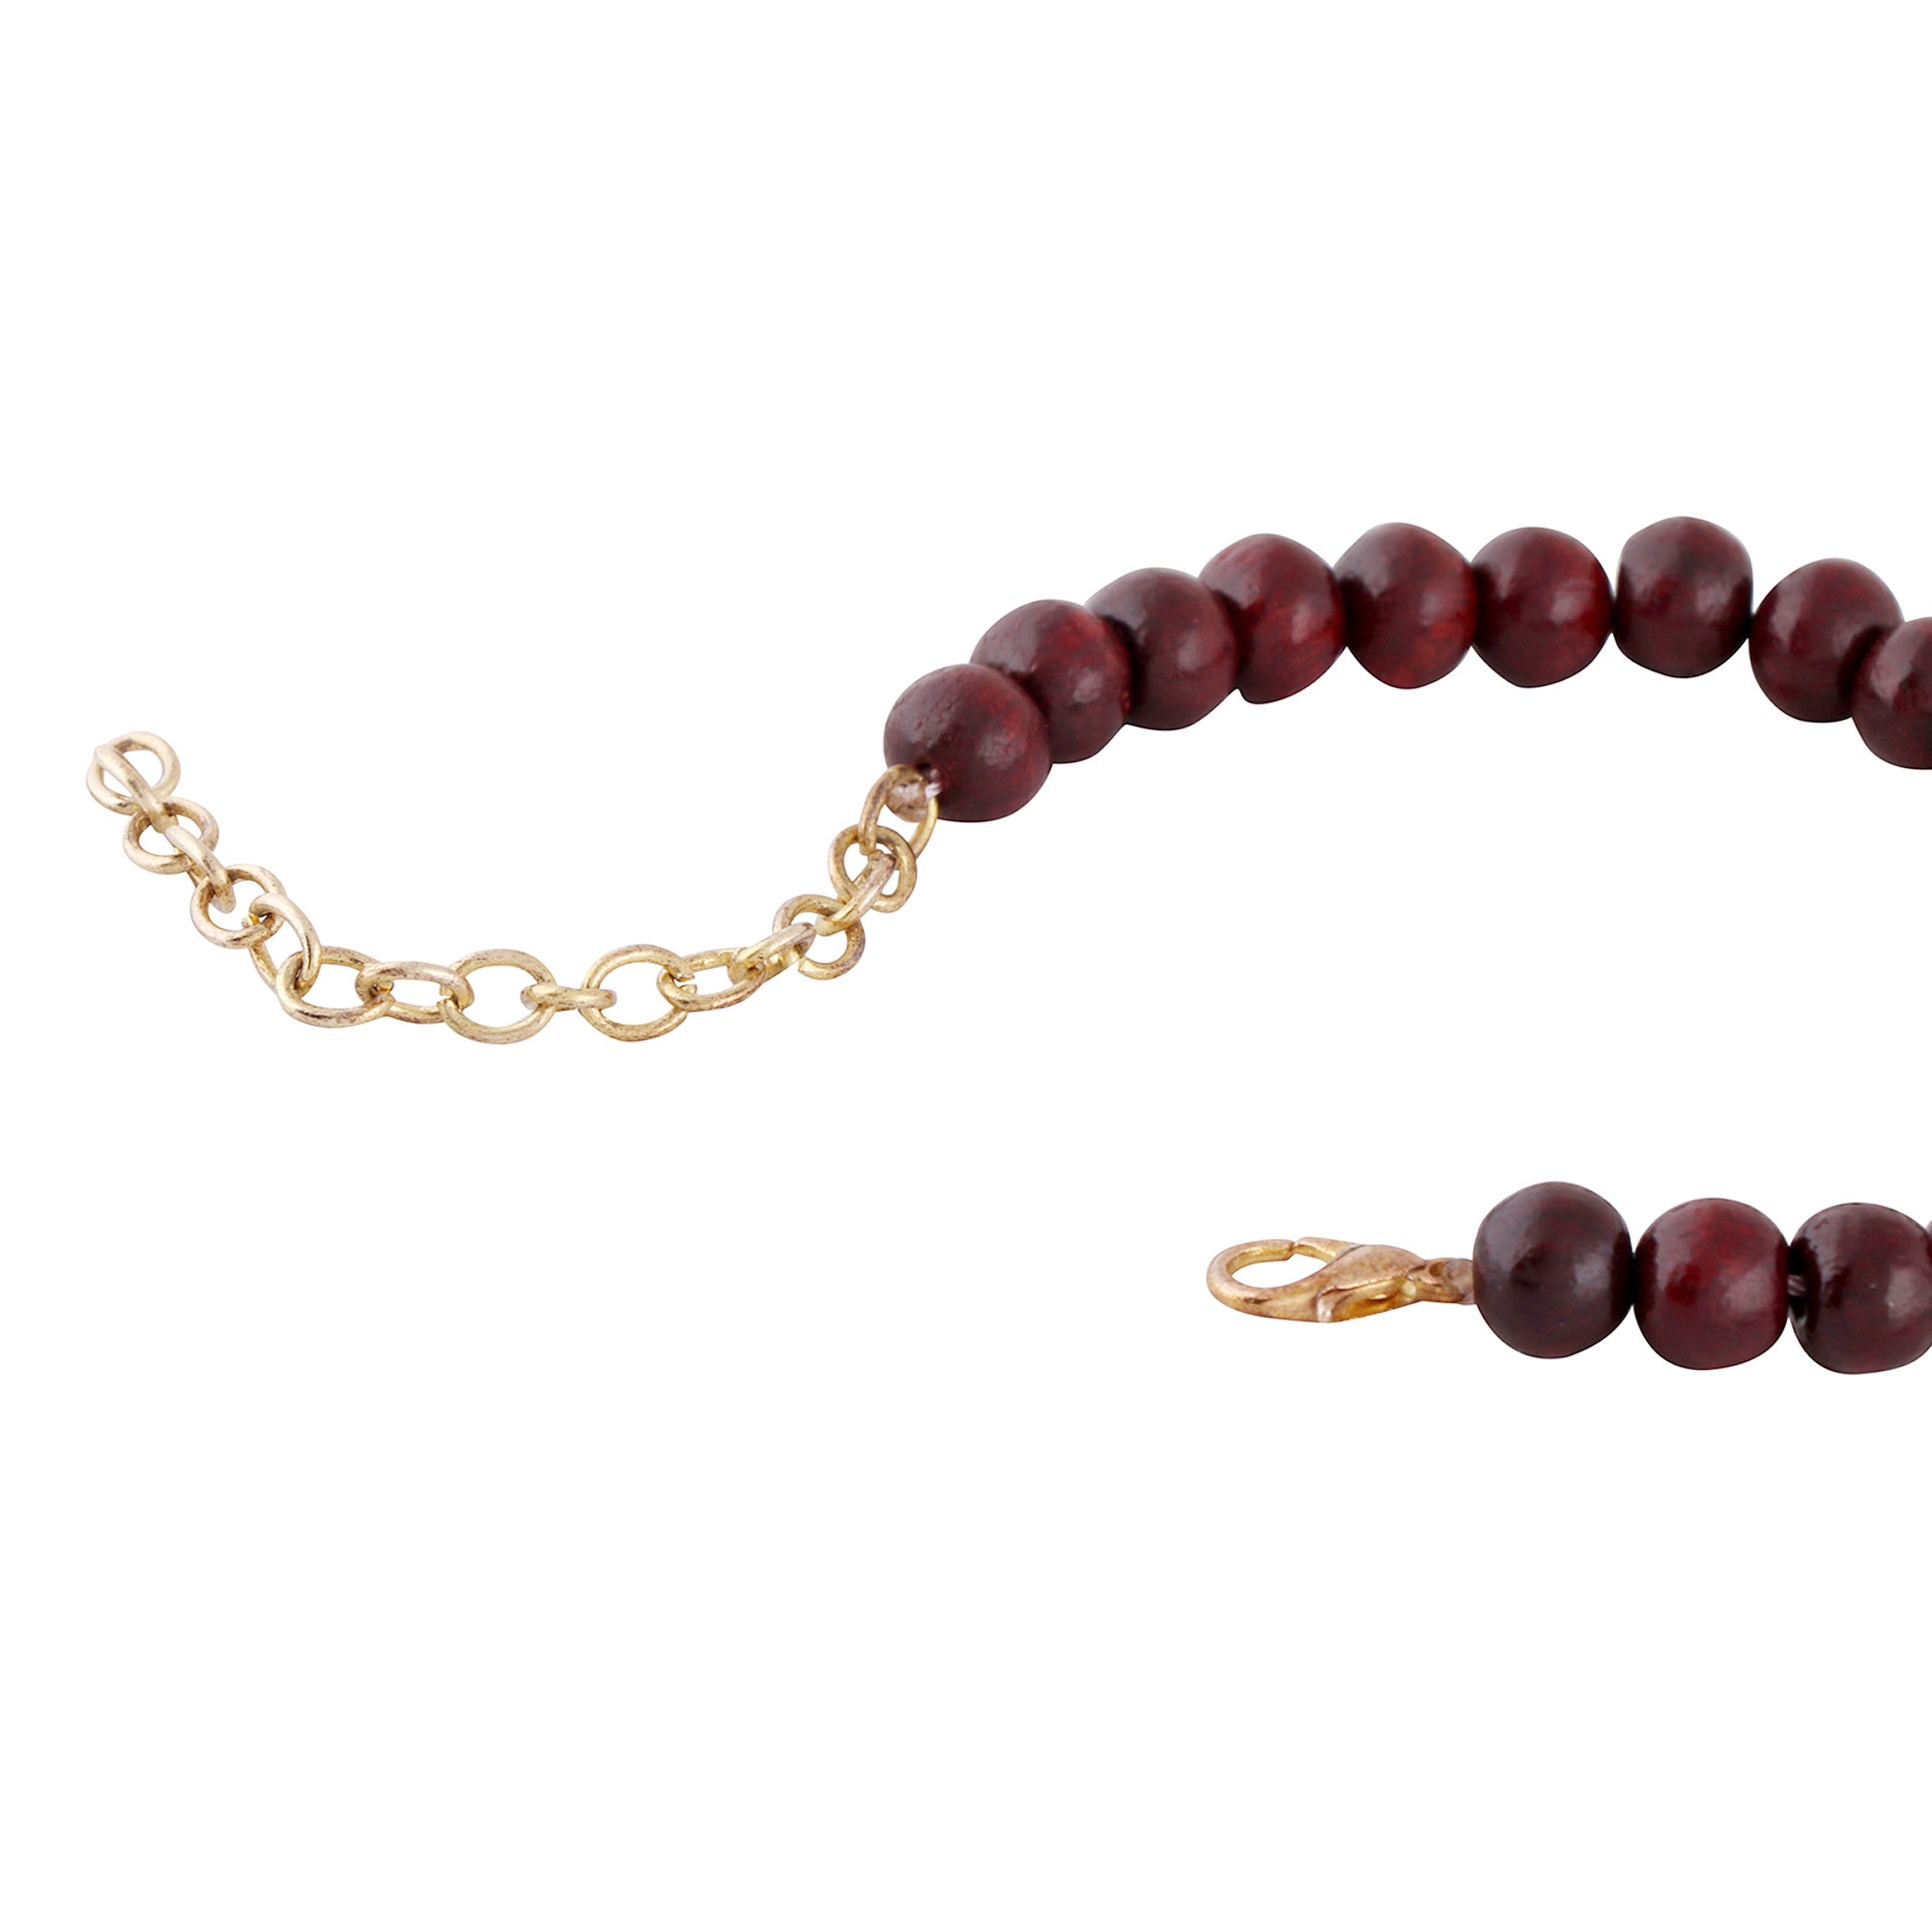 Wooden beads bracelet with unique design Bracelet for men Unigender bracelet Bracelet